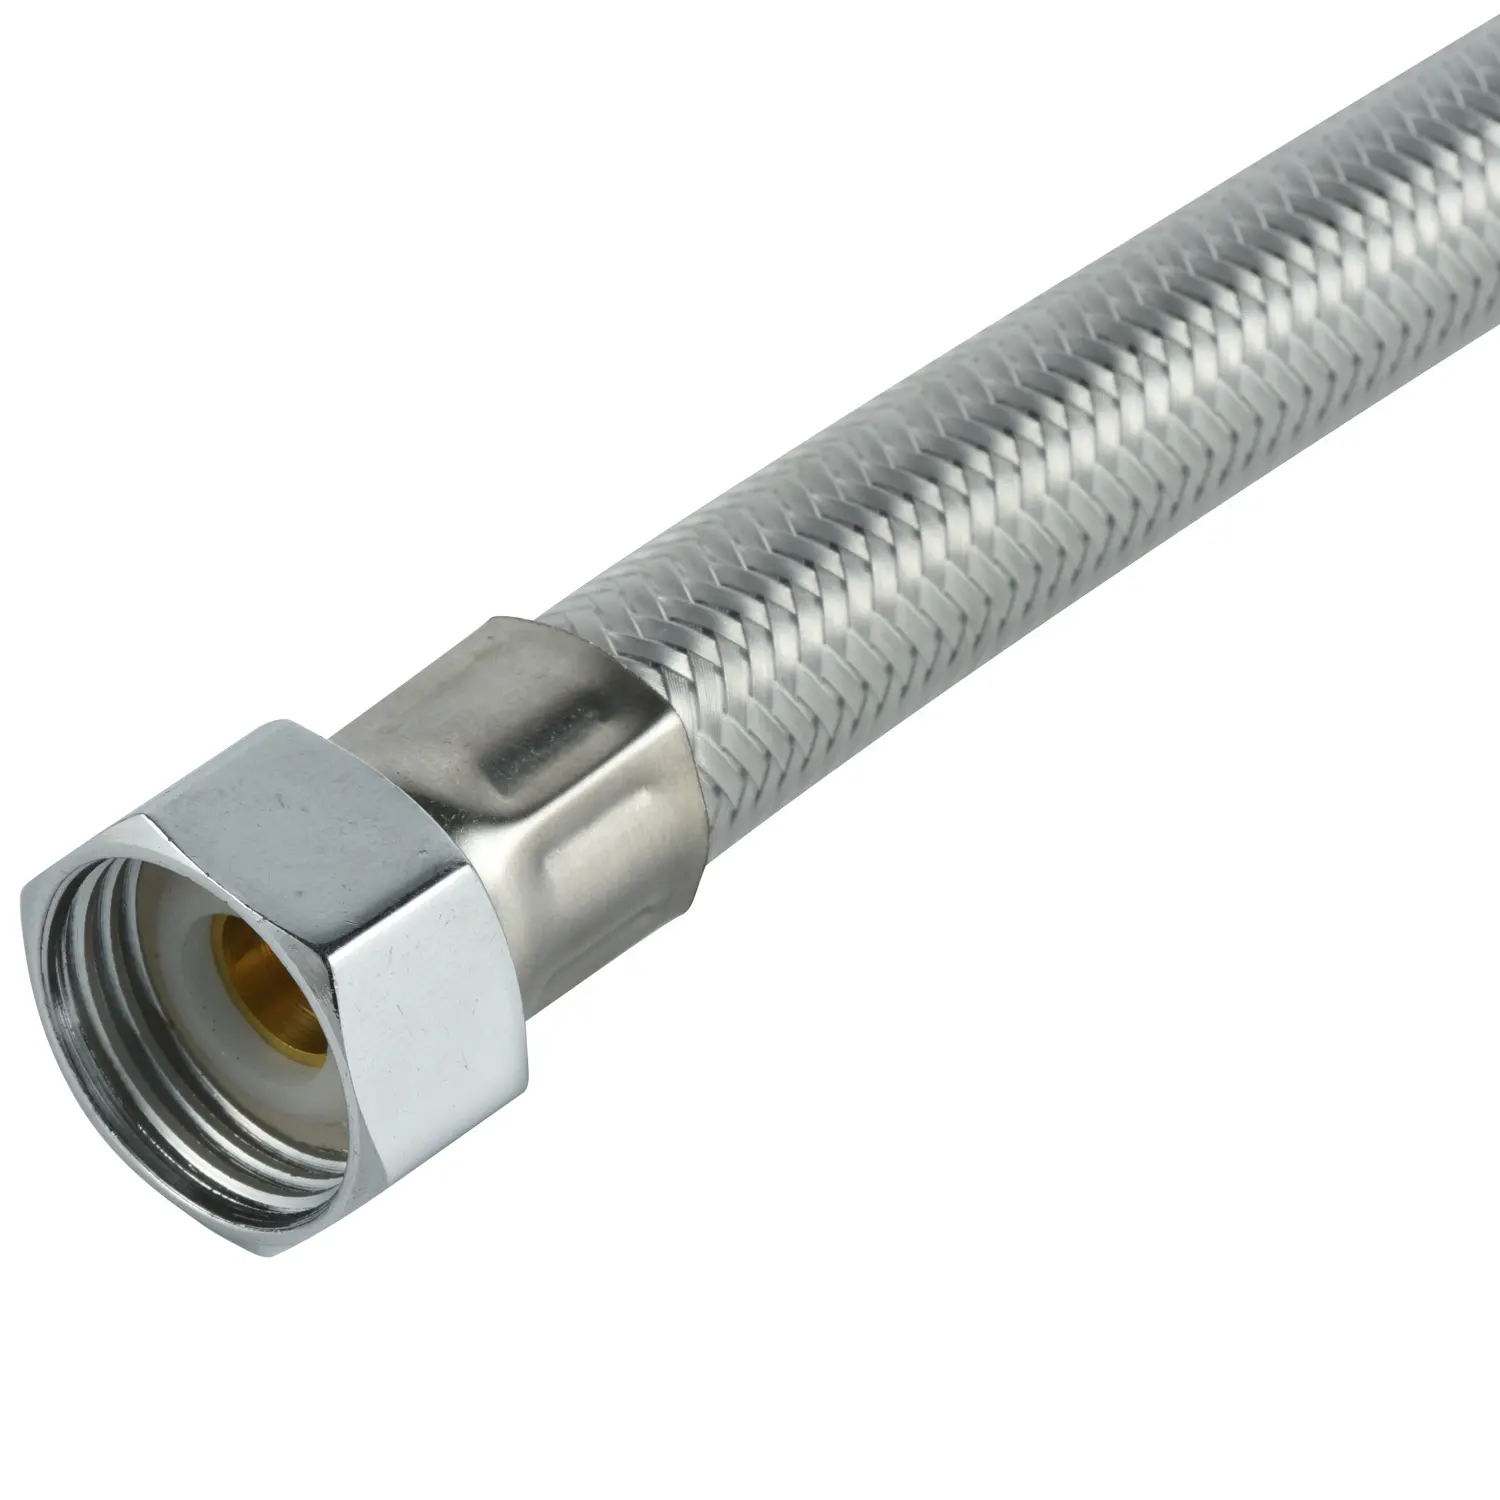 Tuyau de raccordement personnalisé en fil d'acier inoxydable flexible tressé en métal et caoutchouc tuyau flexible tressé